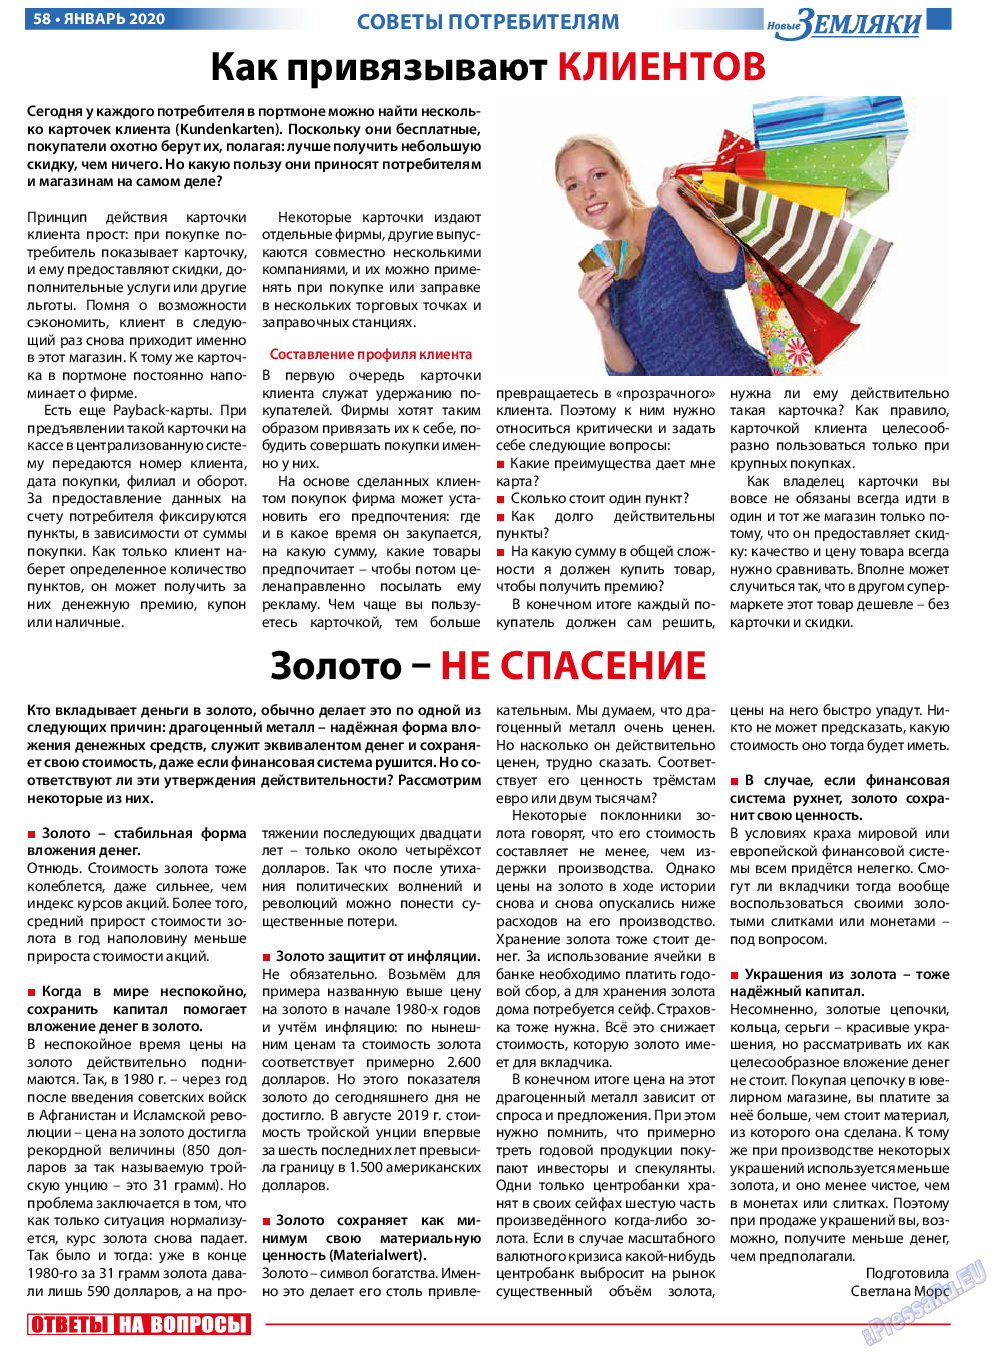 Новые Земляки, газета. 2020 №1 стр.58